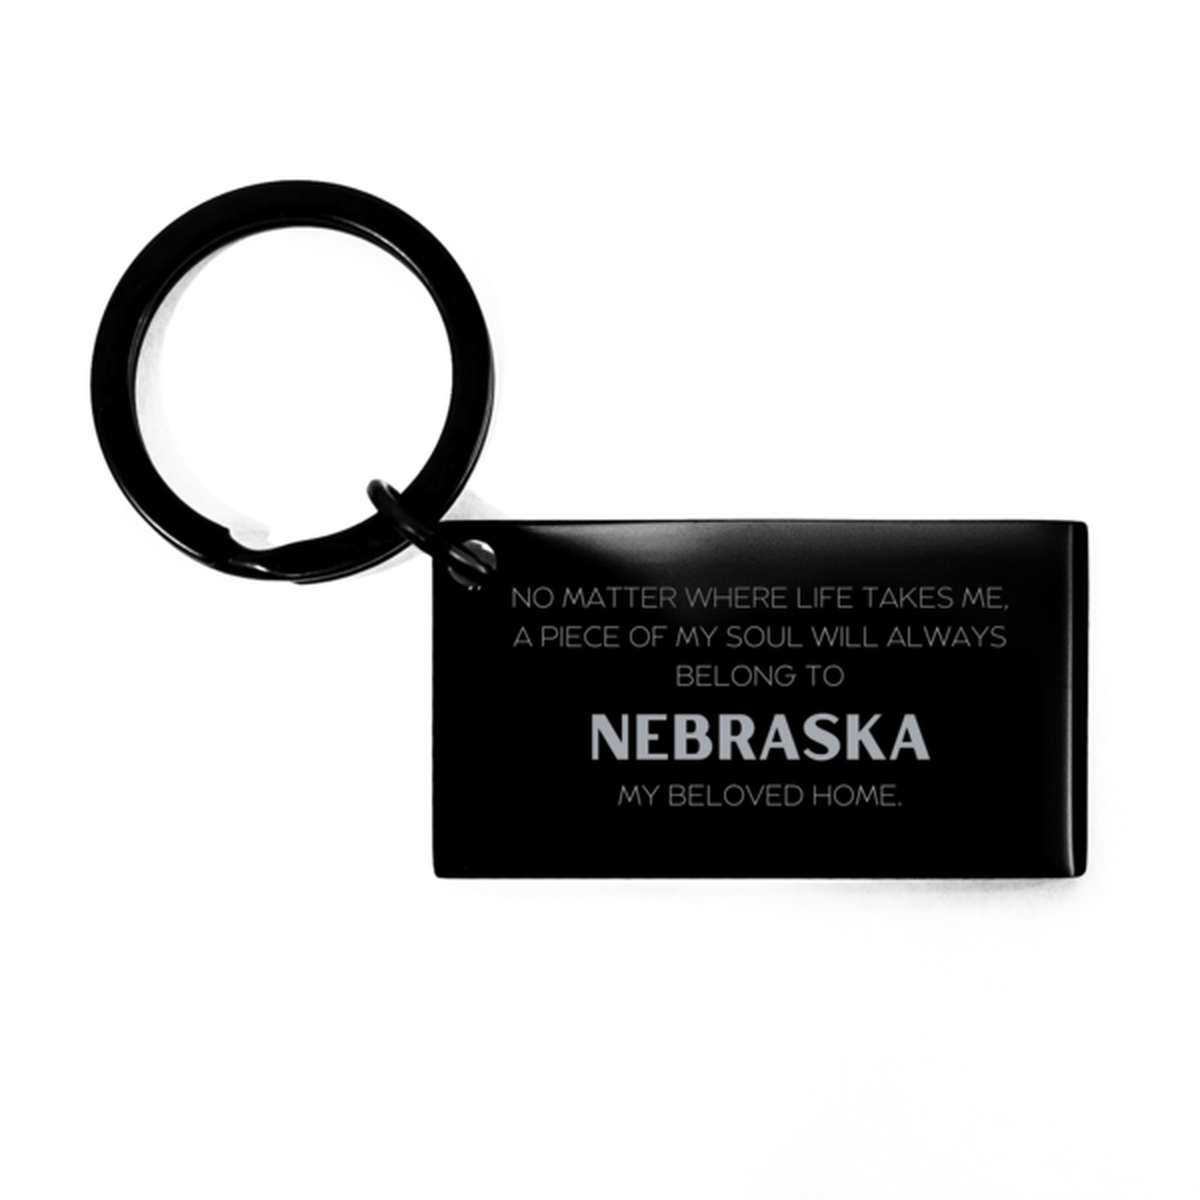 Love Nebraska State Gifts, My soul will always belong to Nebraska, Proud Keychain, Birthday Unique Gifts For Nebraska Men, Women, Friends